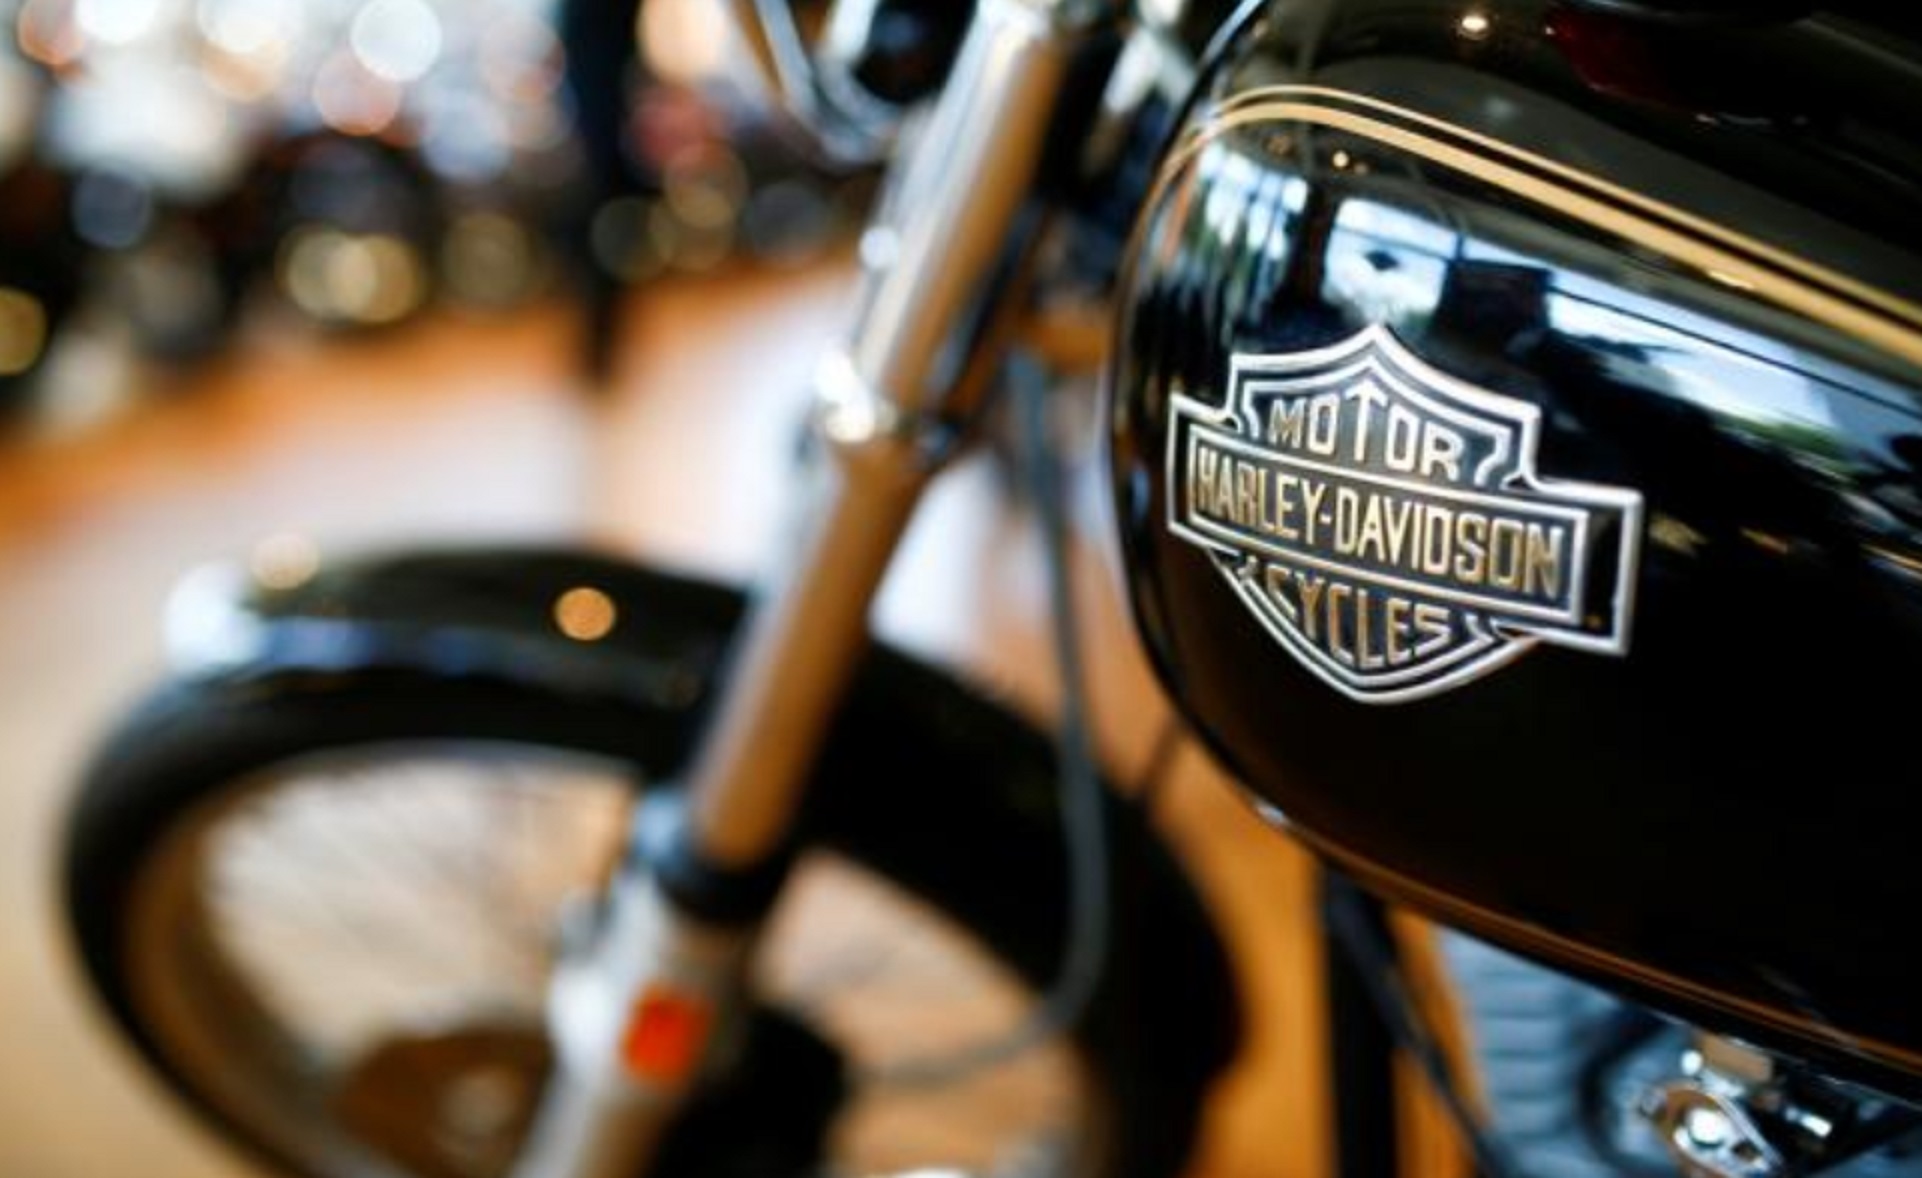 Harley Davidson planea sacar de EU parte de su producción